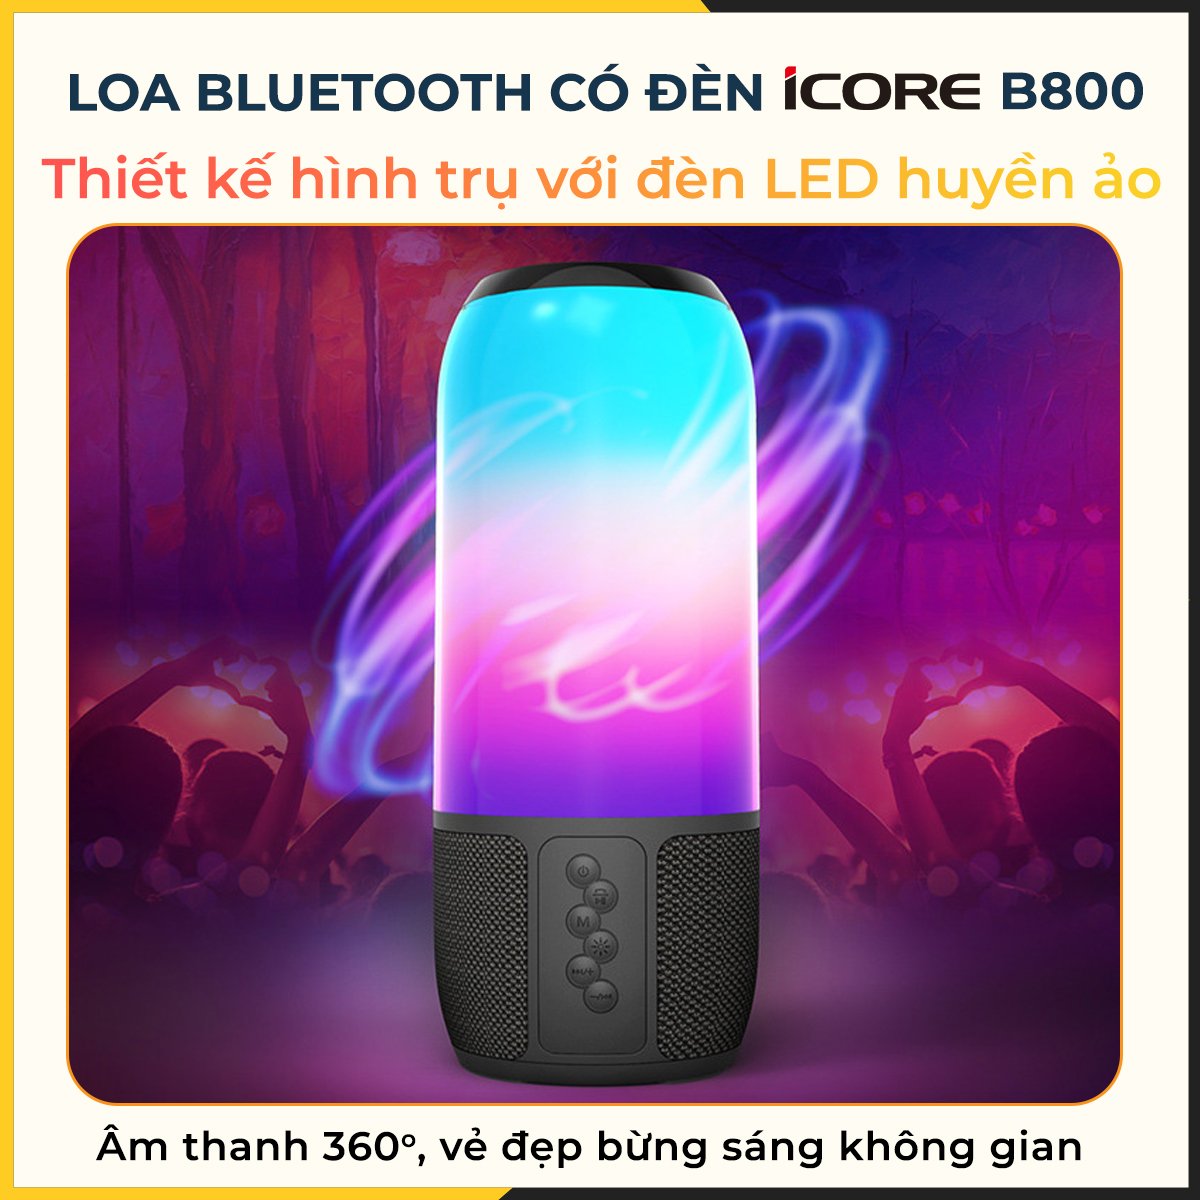 Loa Bluetooth có đèn iCore B800